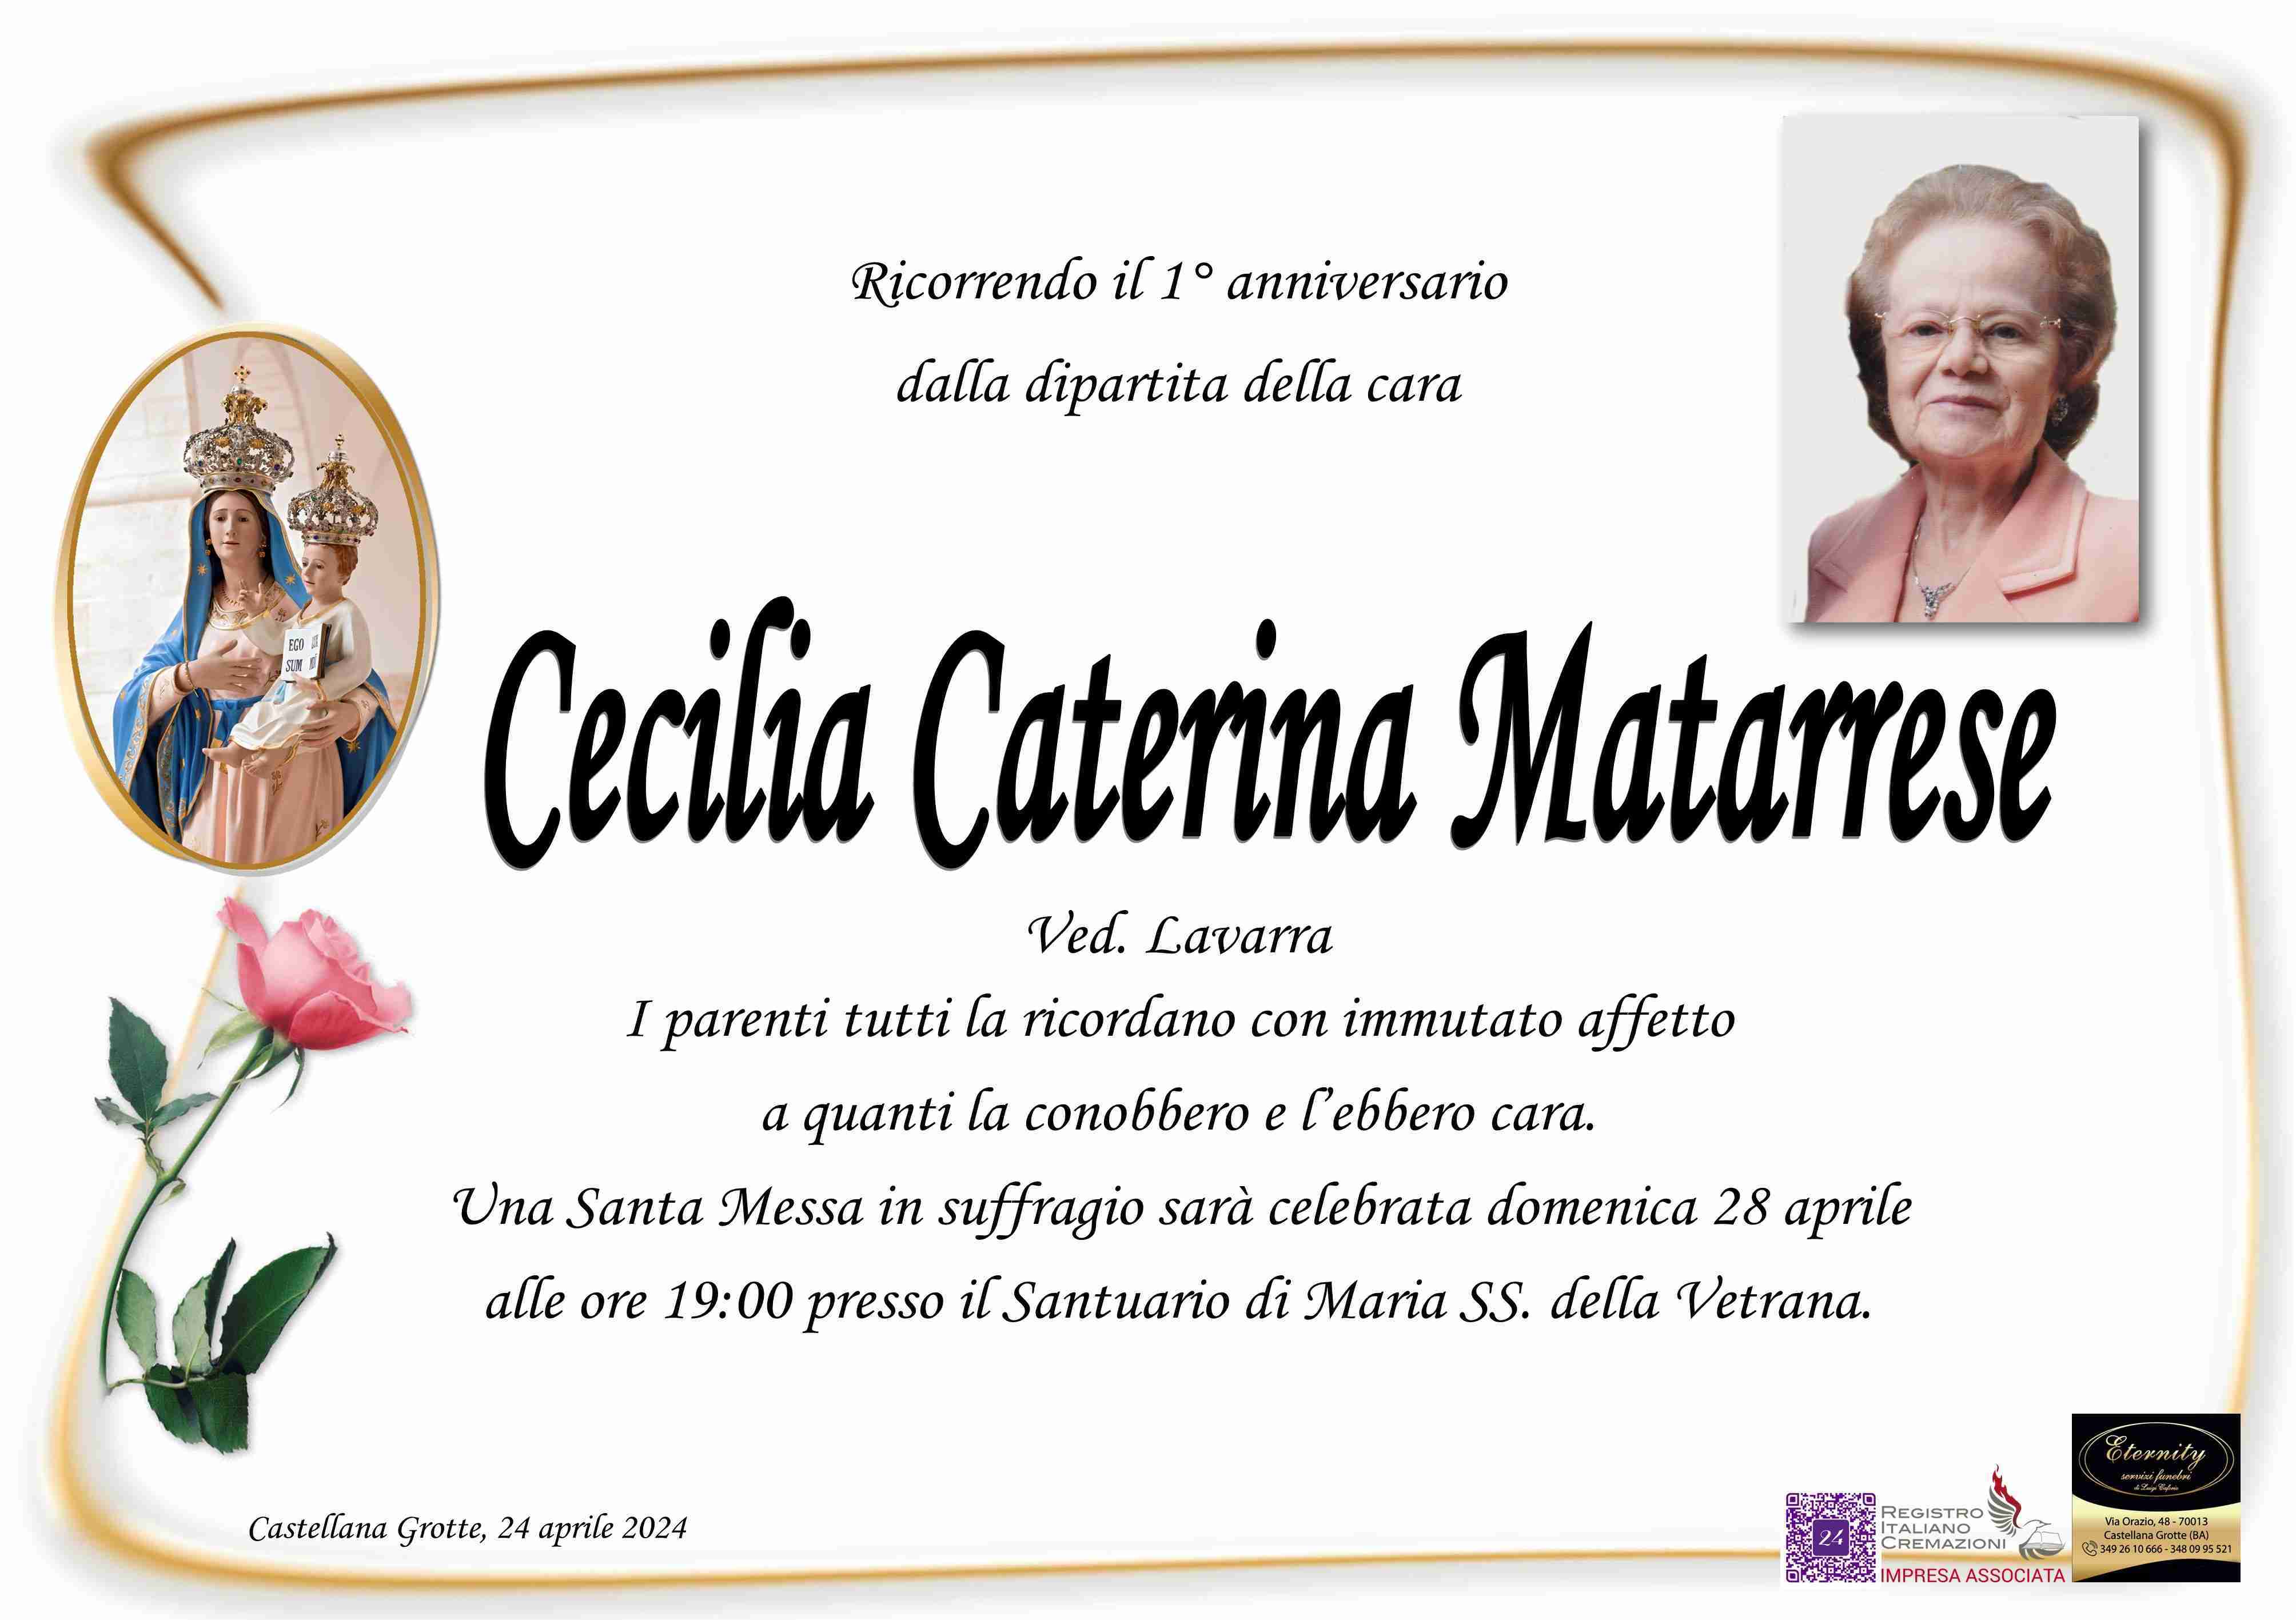 Cecilia Caterina Matarrese